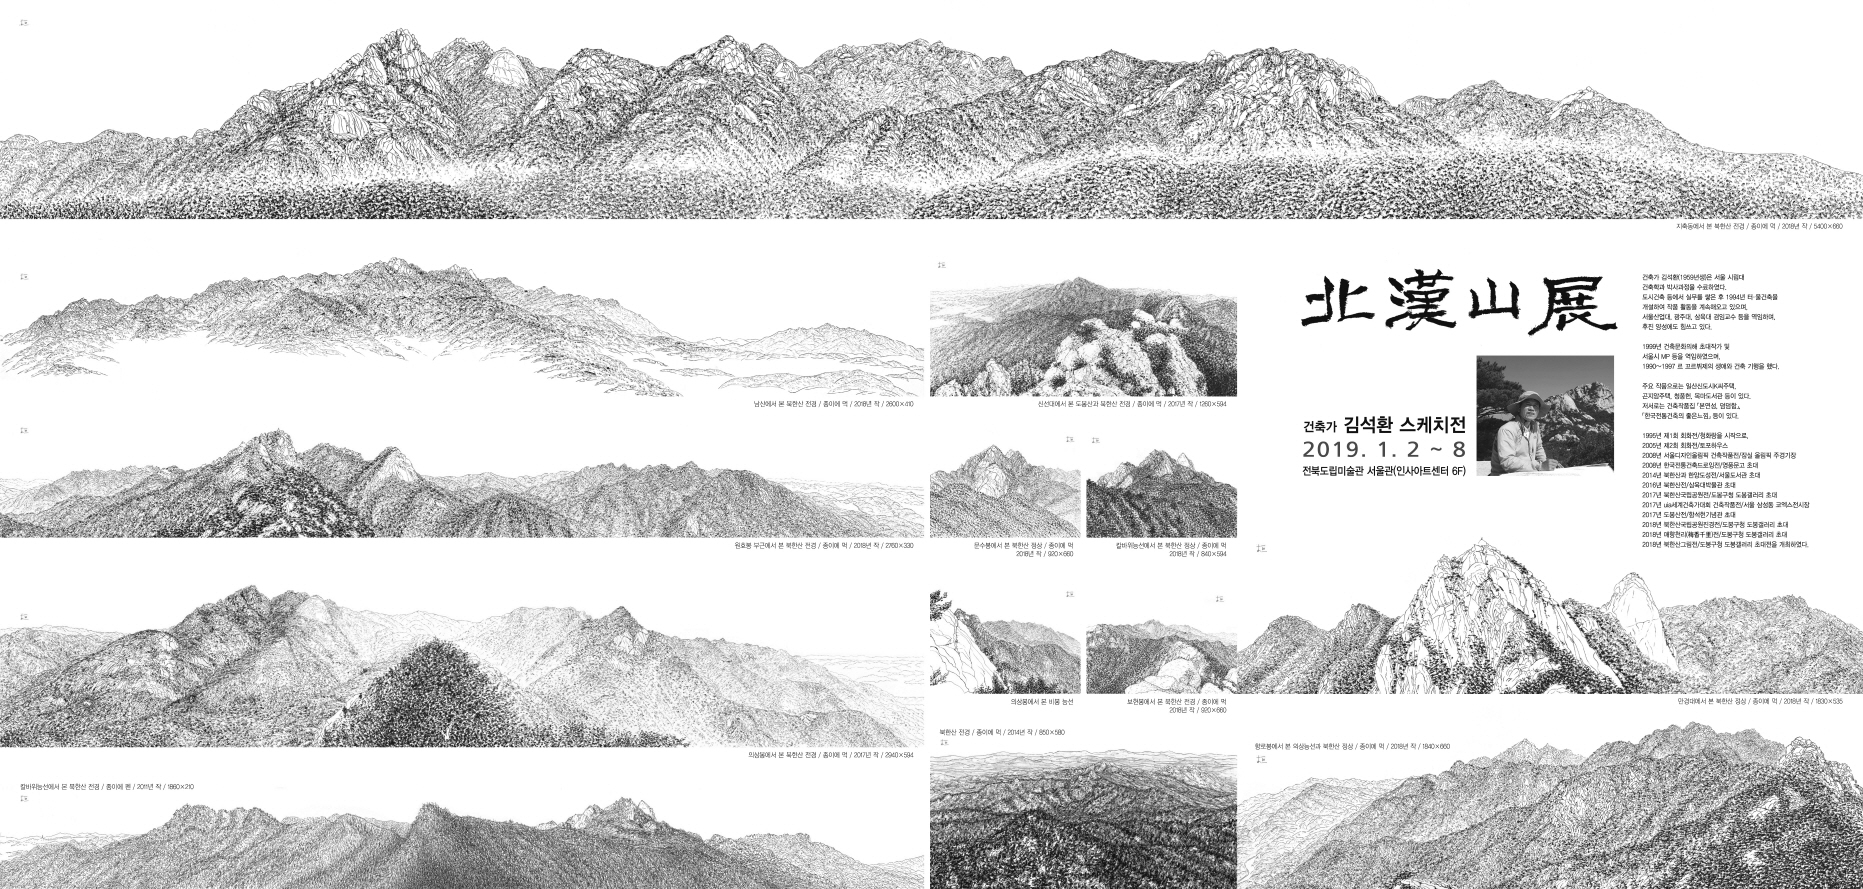 ● 멋진 세상 속 그림 읽기_ 실사와 사실 정신으로 구현한 건축가 김석환의 북한산전 스케치